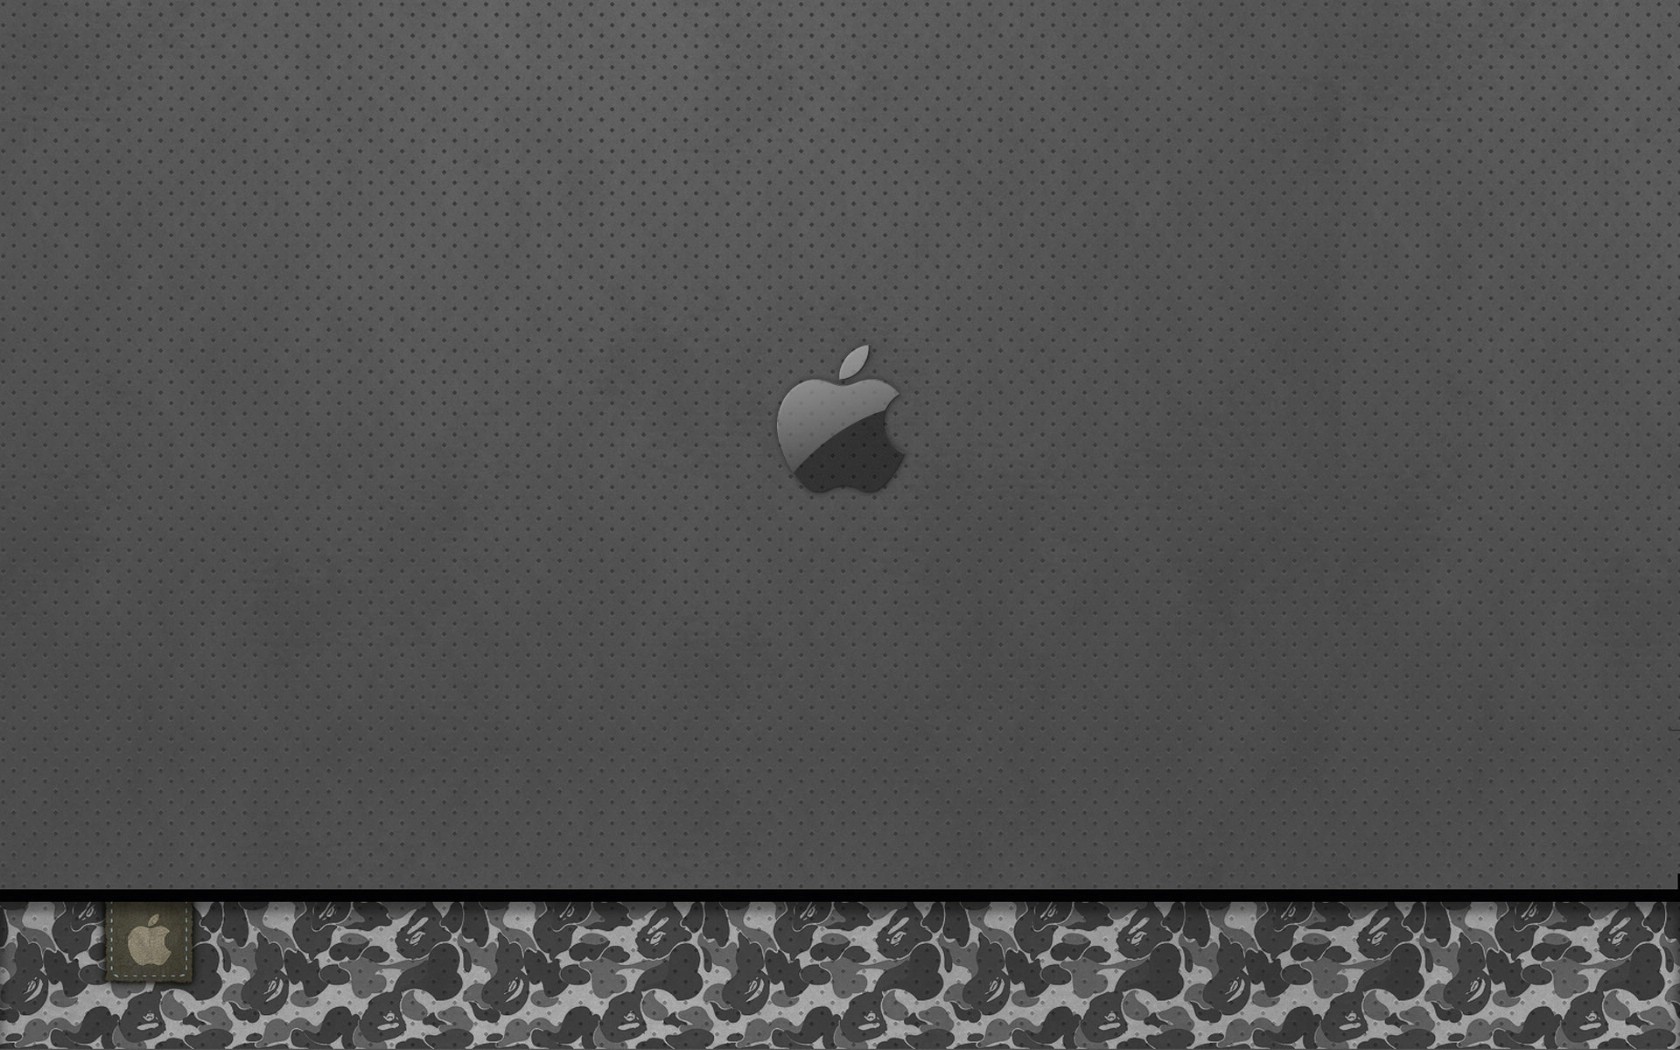 壁纸1680x1050Apple主题 42 3壁纸 Apple主题壁纸 Apple主题图片 Apple主题素材 系统壁纸 系统图库 系统图片素材桌面壁纸